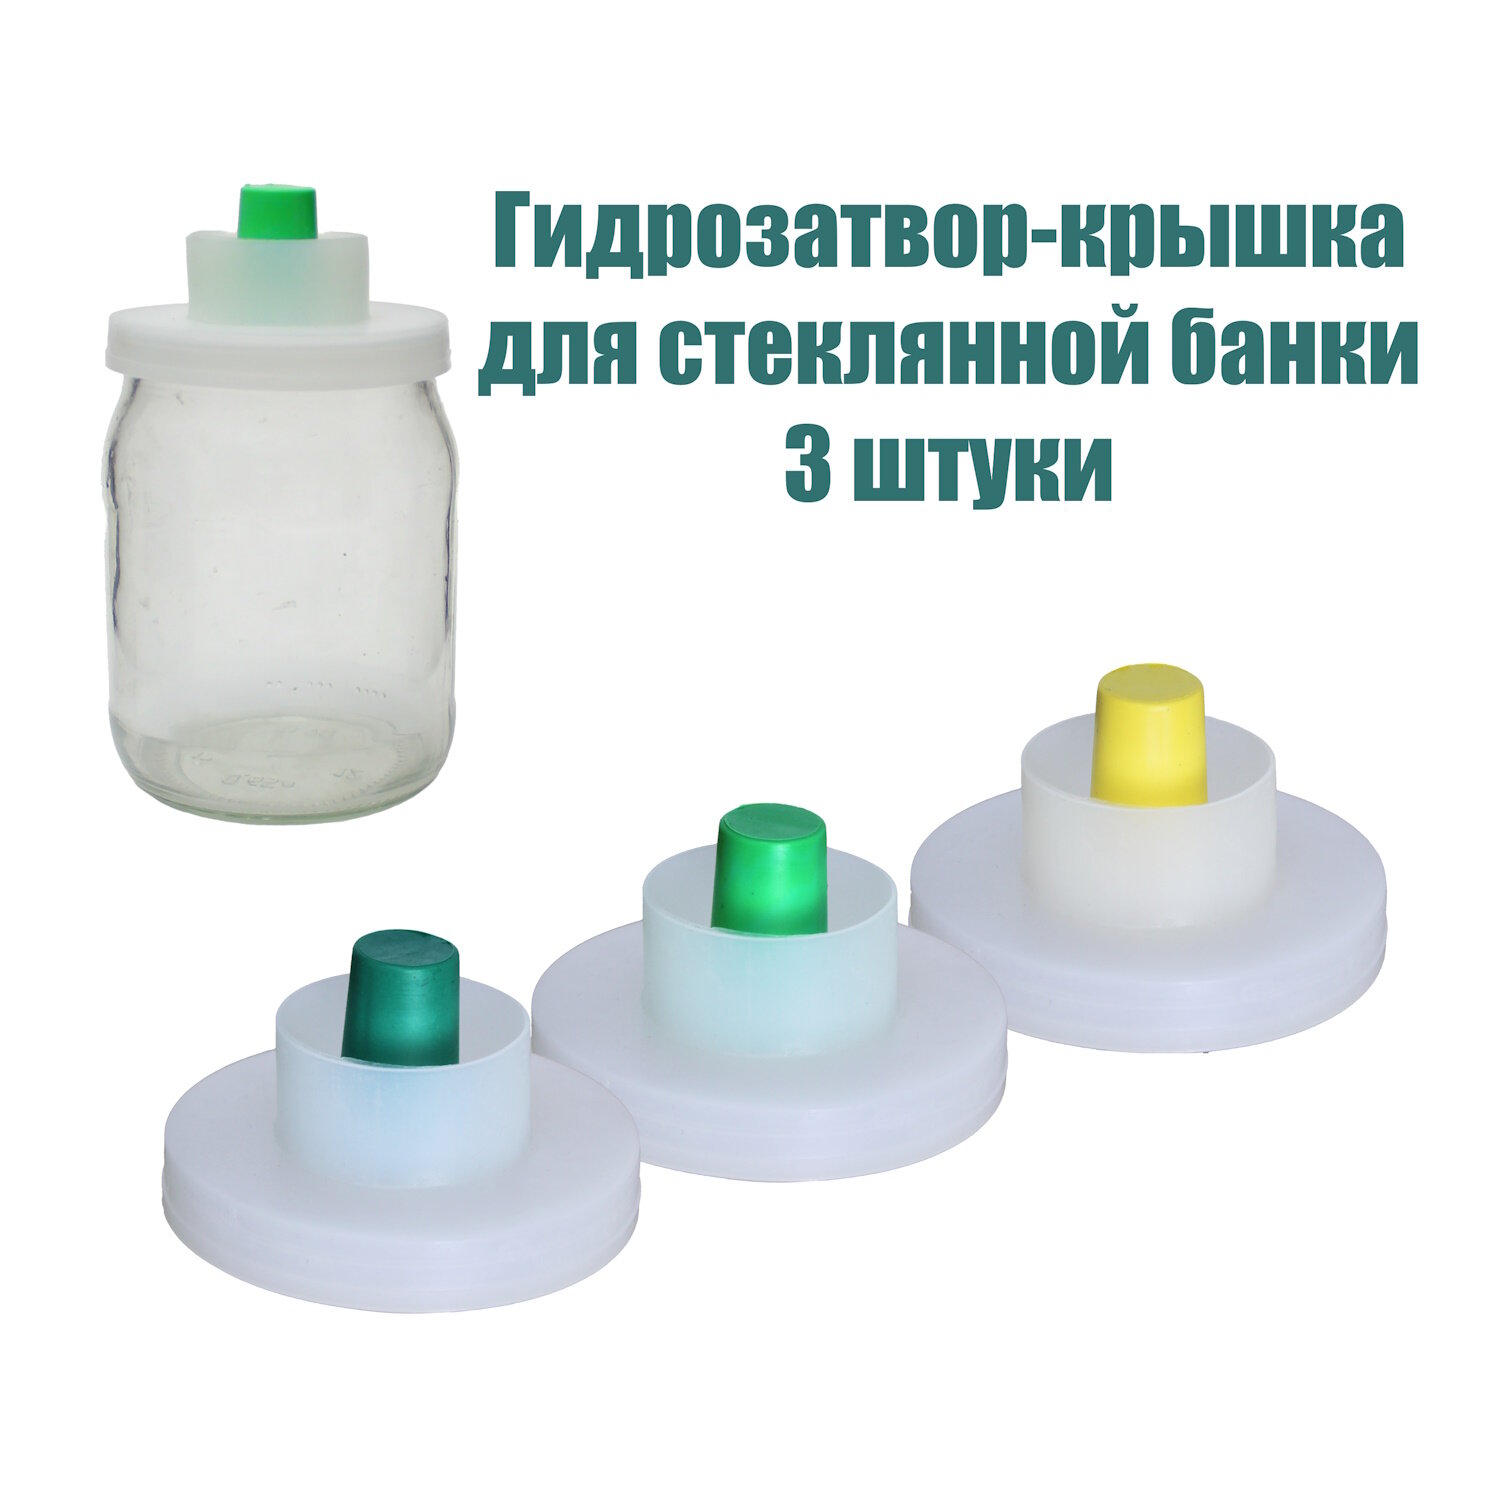 Гидрозатвор-крышка 3 штуки для стеклянной банки